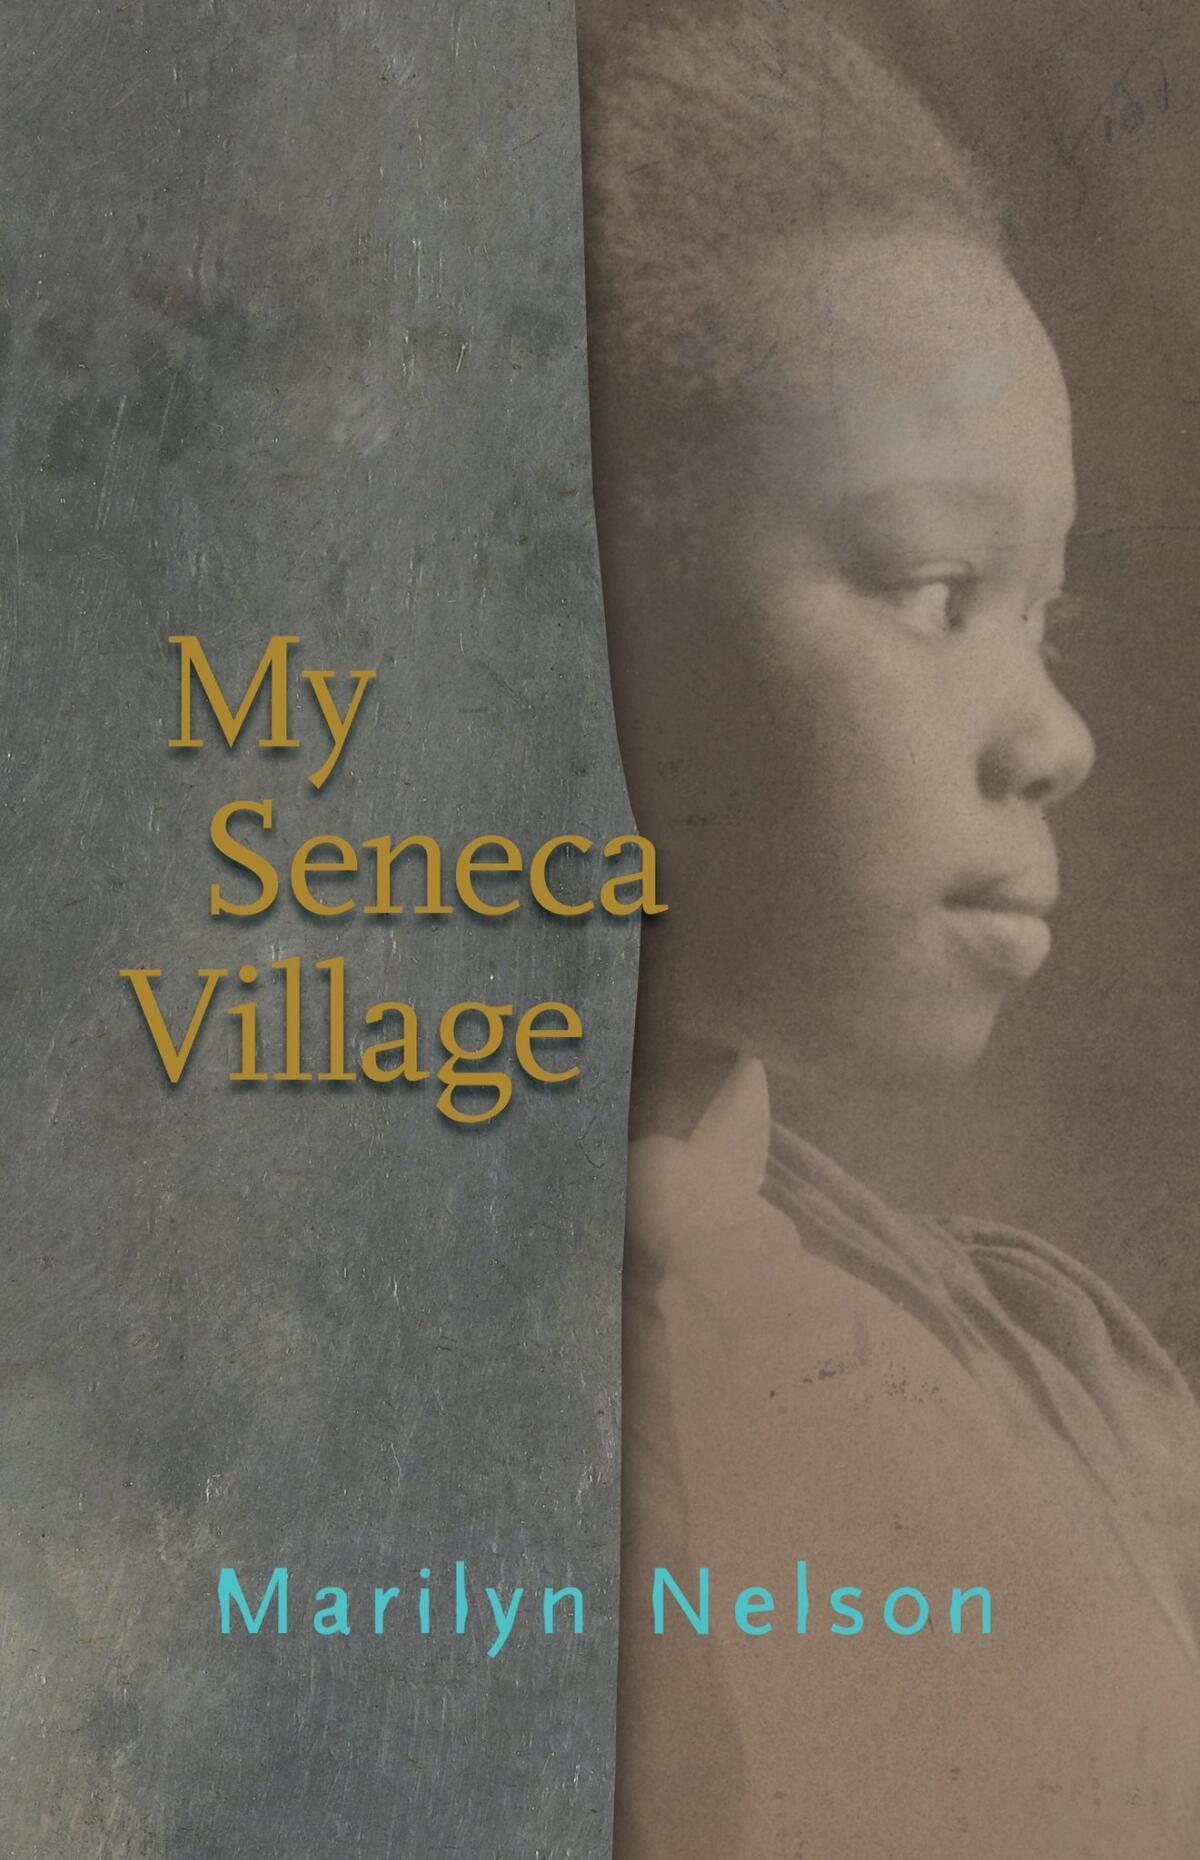 "My Seneca Village" (namelos)